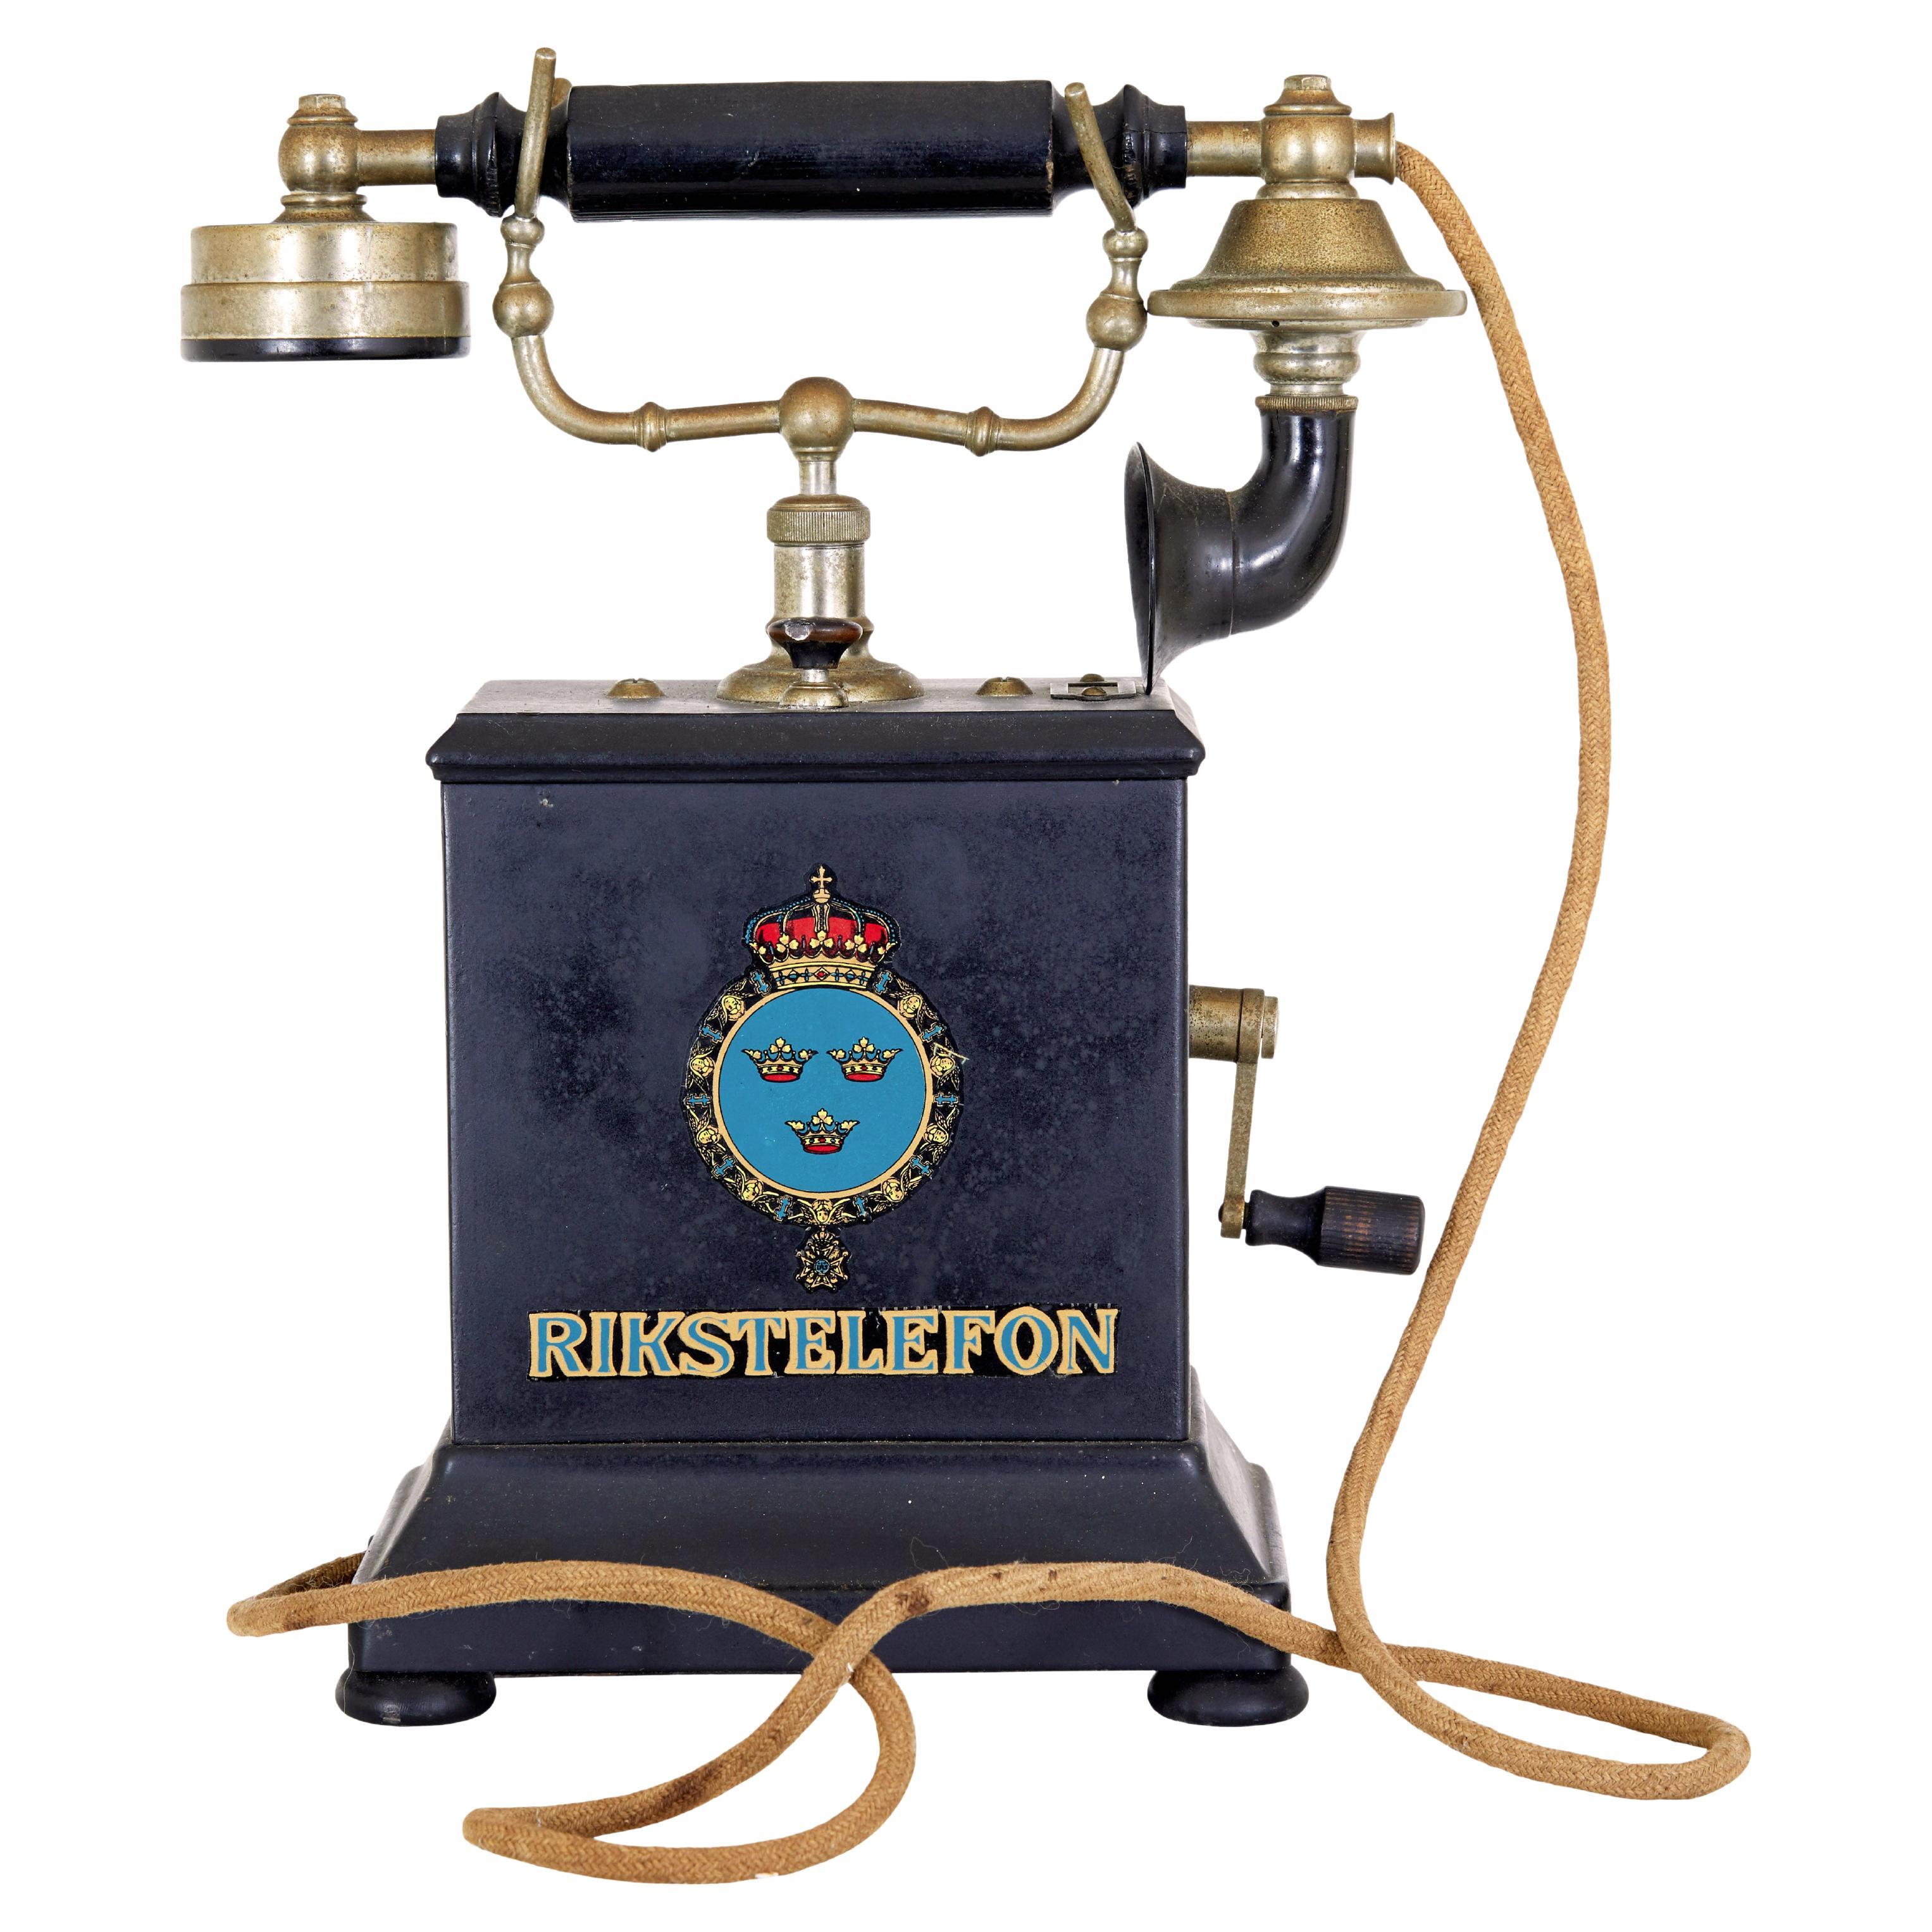 Schwedisches Metall Telefon aus dem frühen 20. Jahrhundert von Rikstelefon